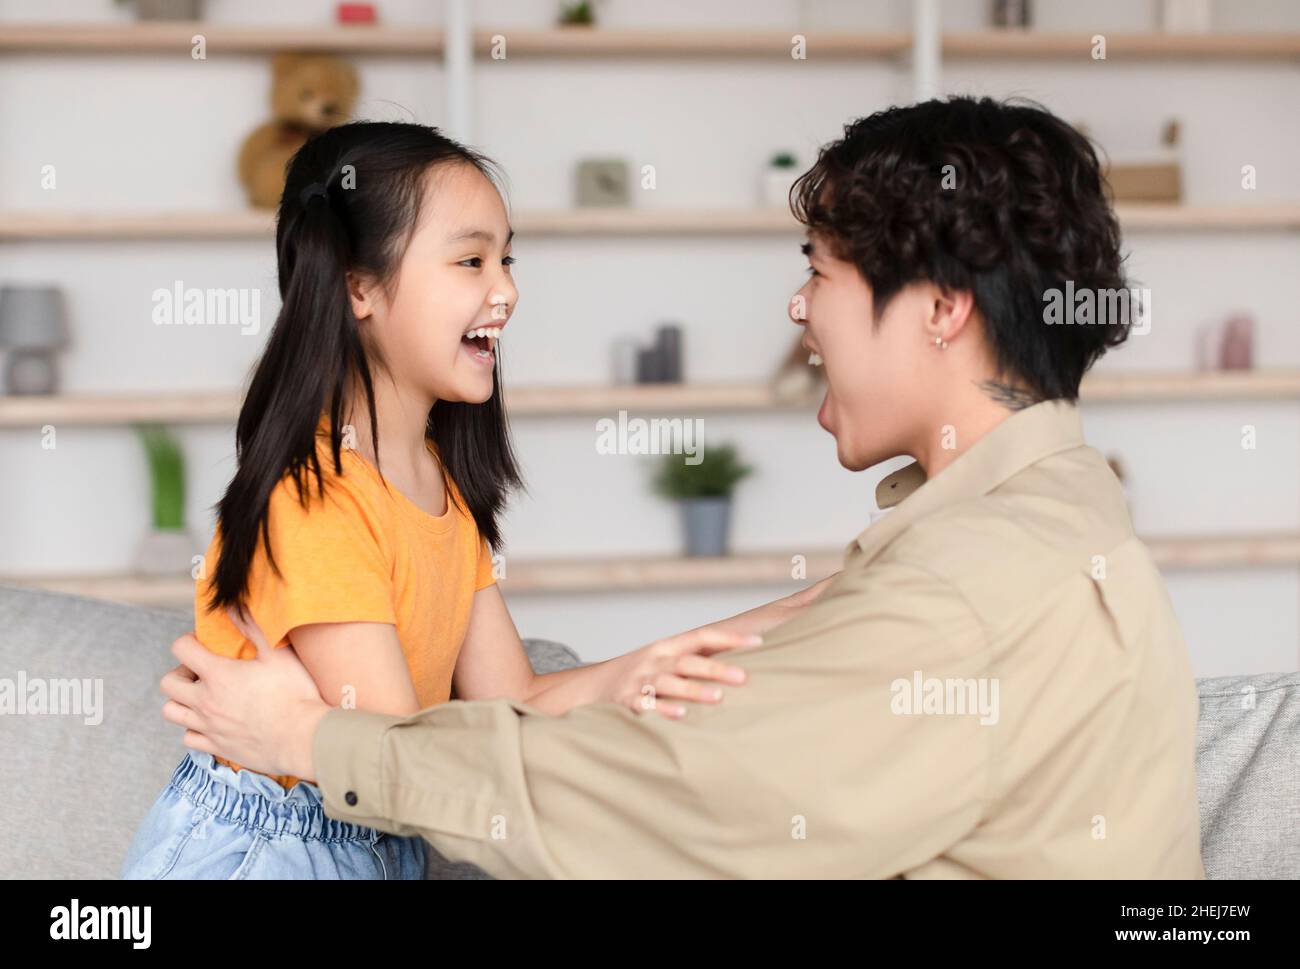 Joyeux homme millénaire asiatique et fille de l'adolescence se regardent les uns les autres avec des bouches ouvertes, ont le plaisir Banque D'Images